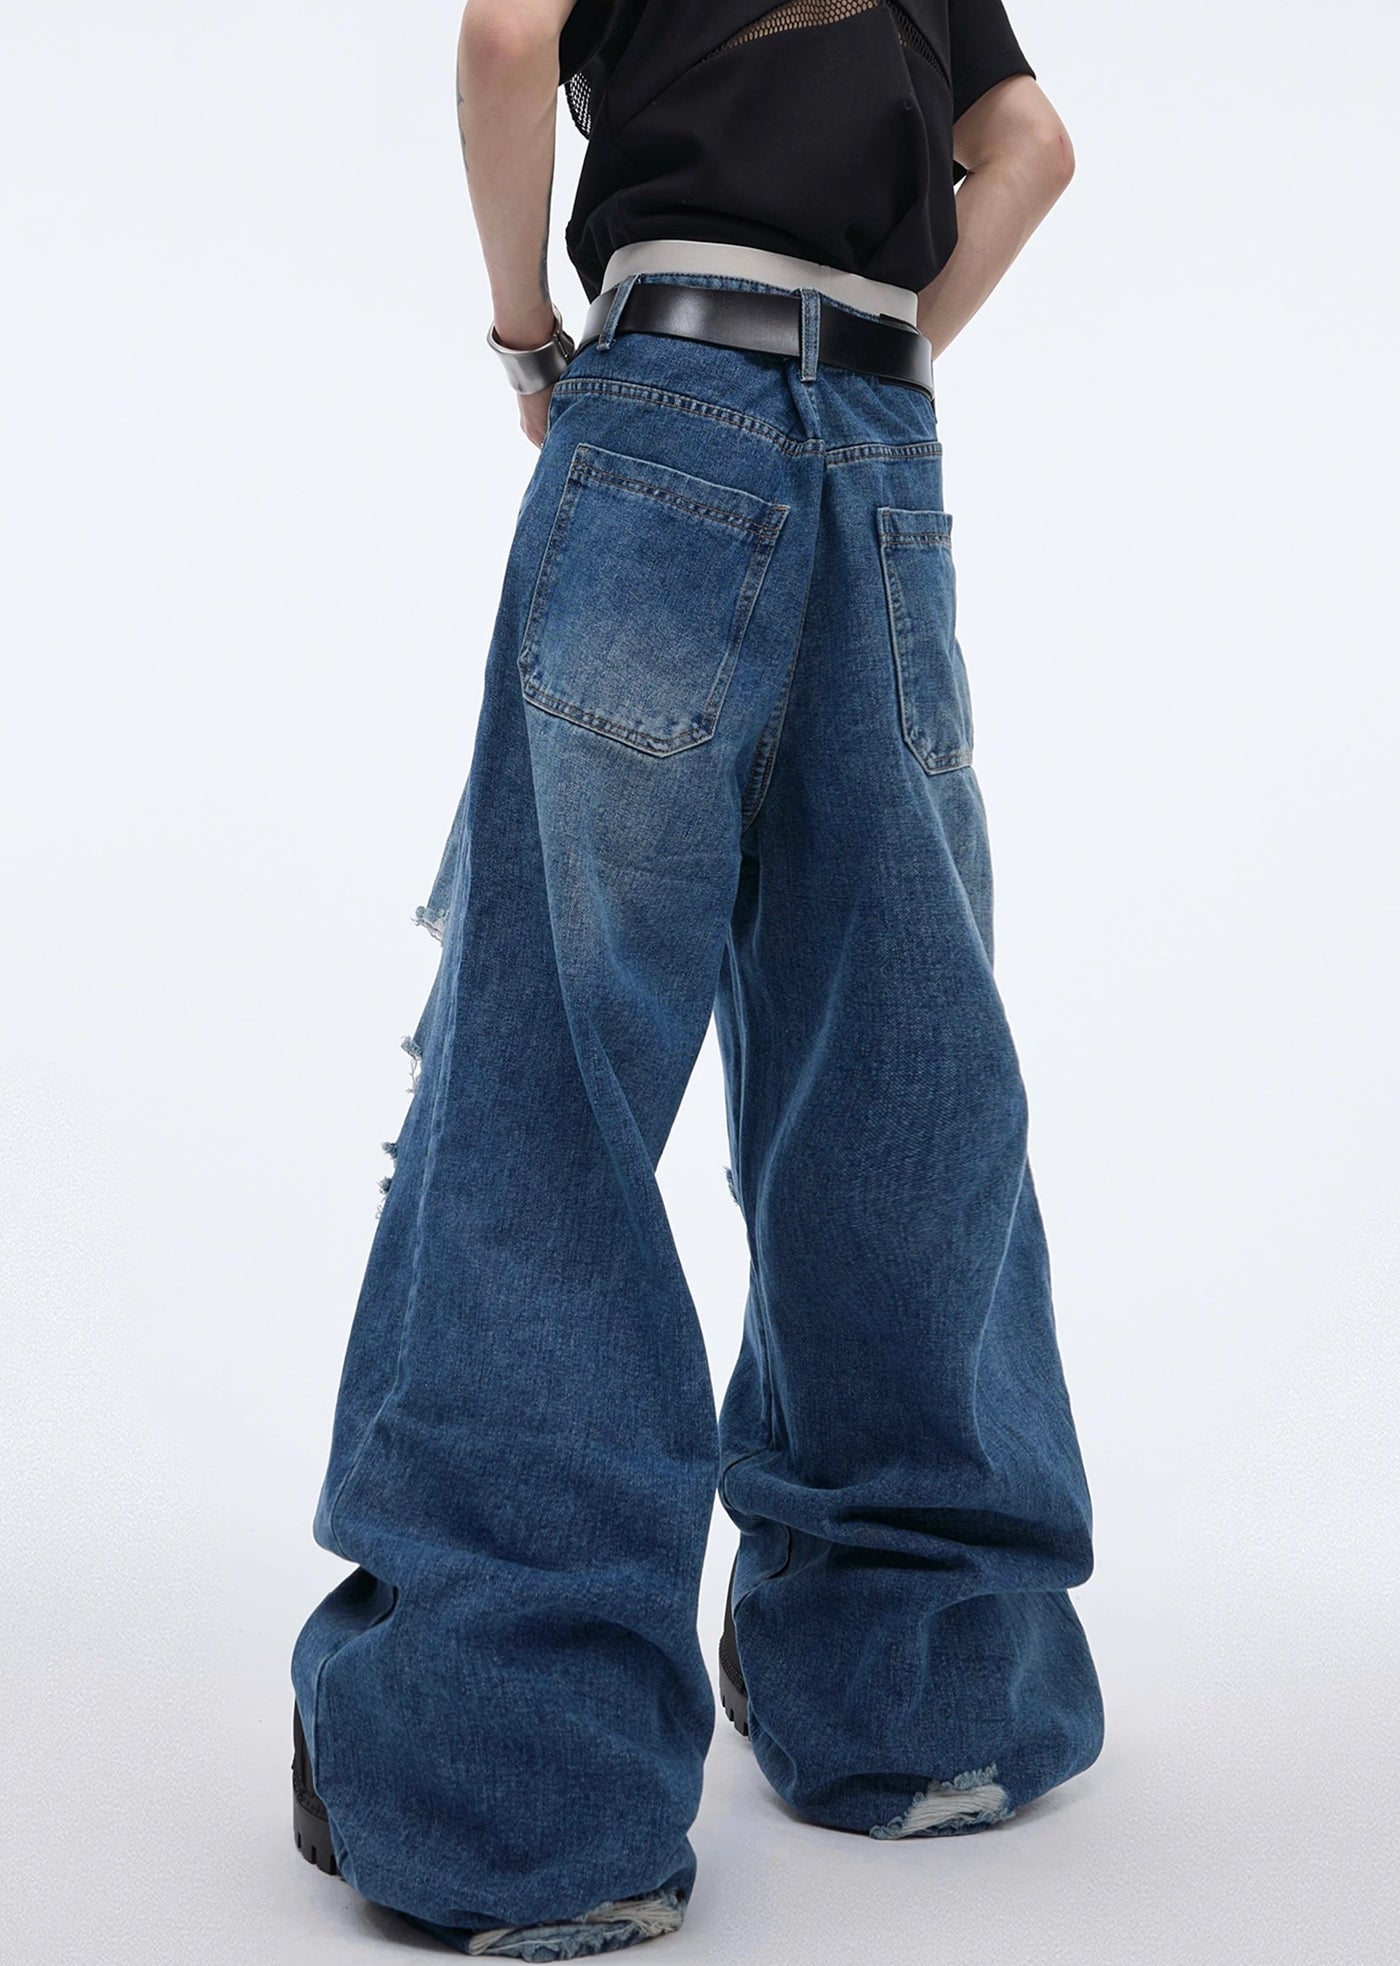 【Culture E】High wide silhouette design full distressed denim pants  CE0119